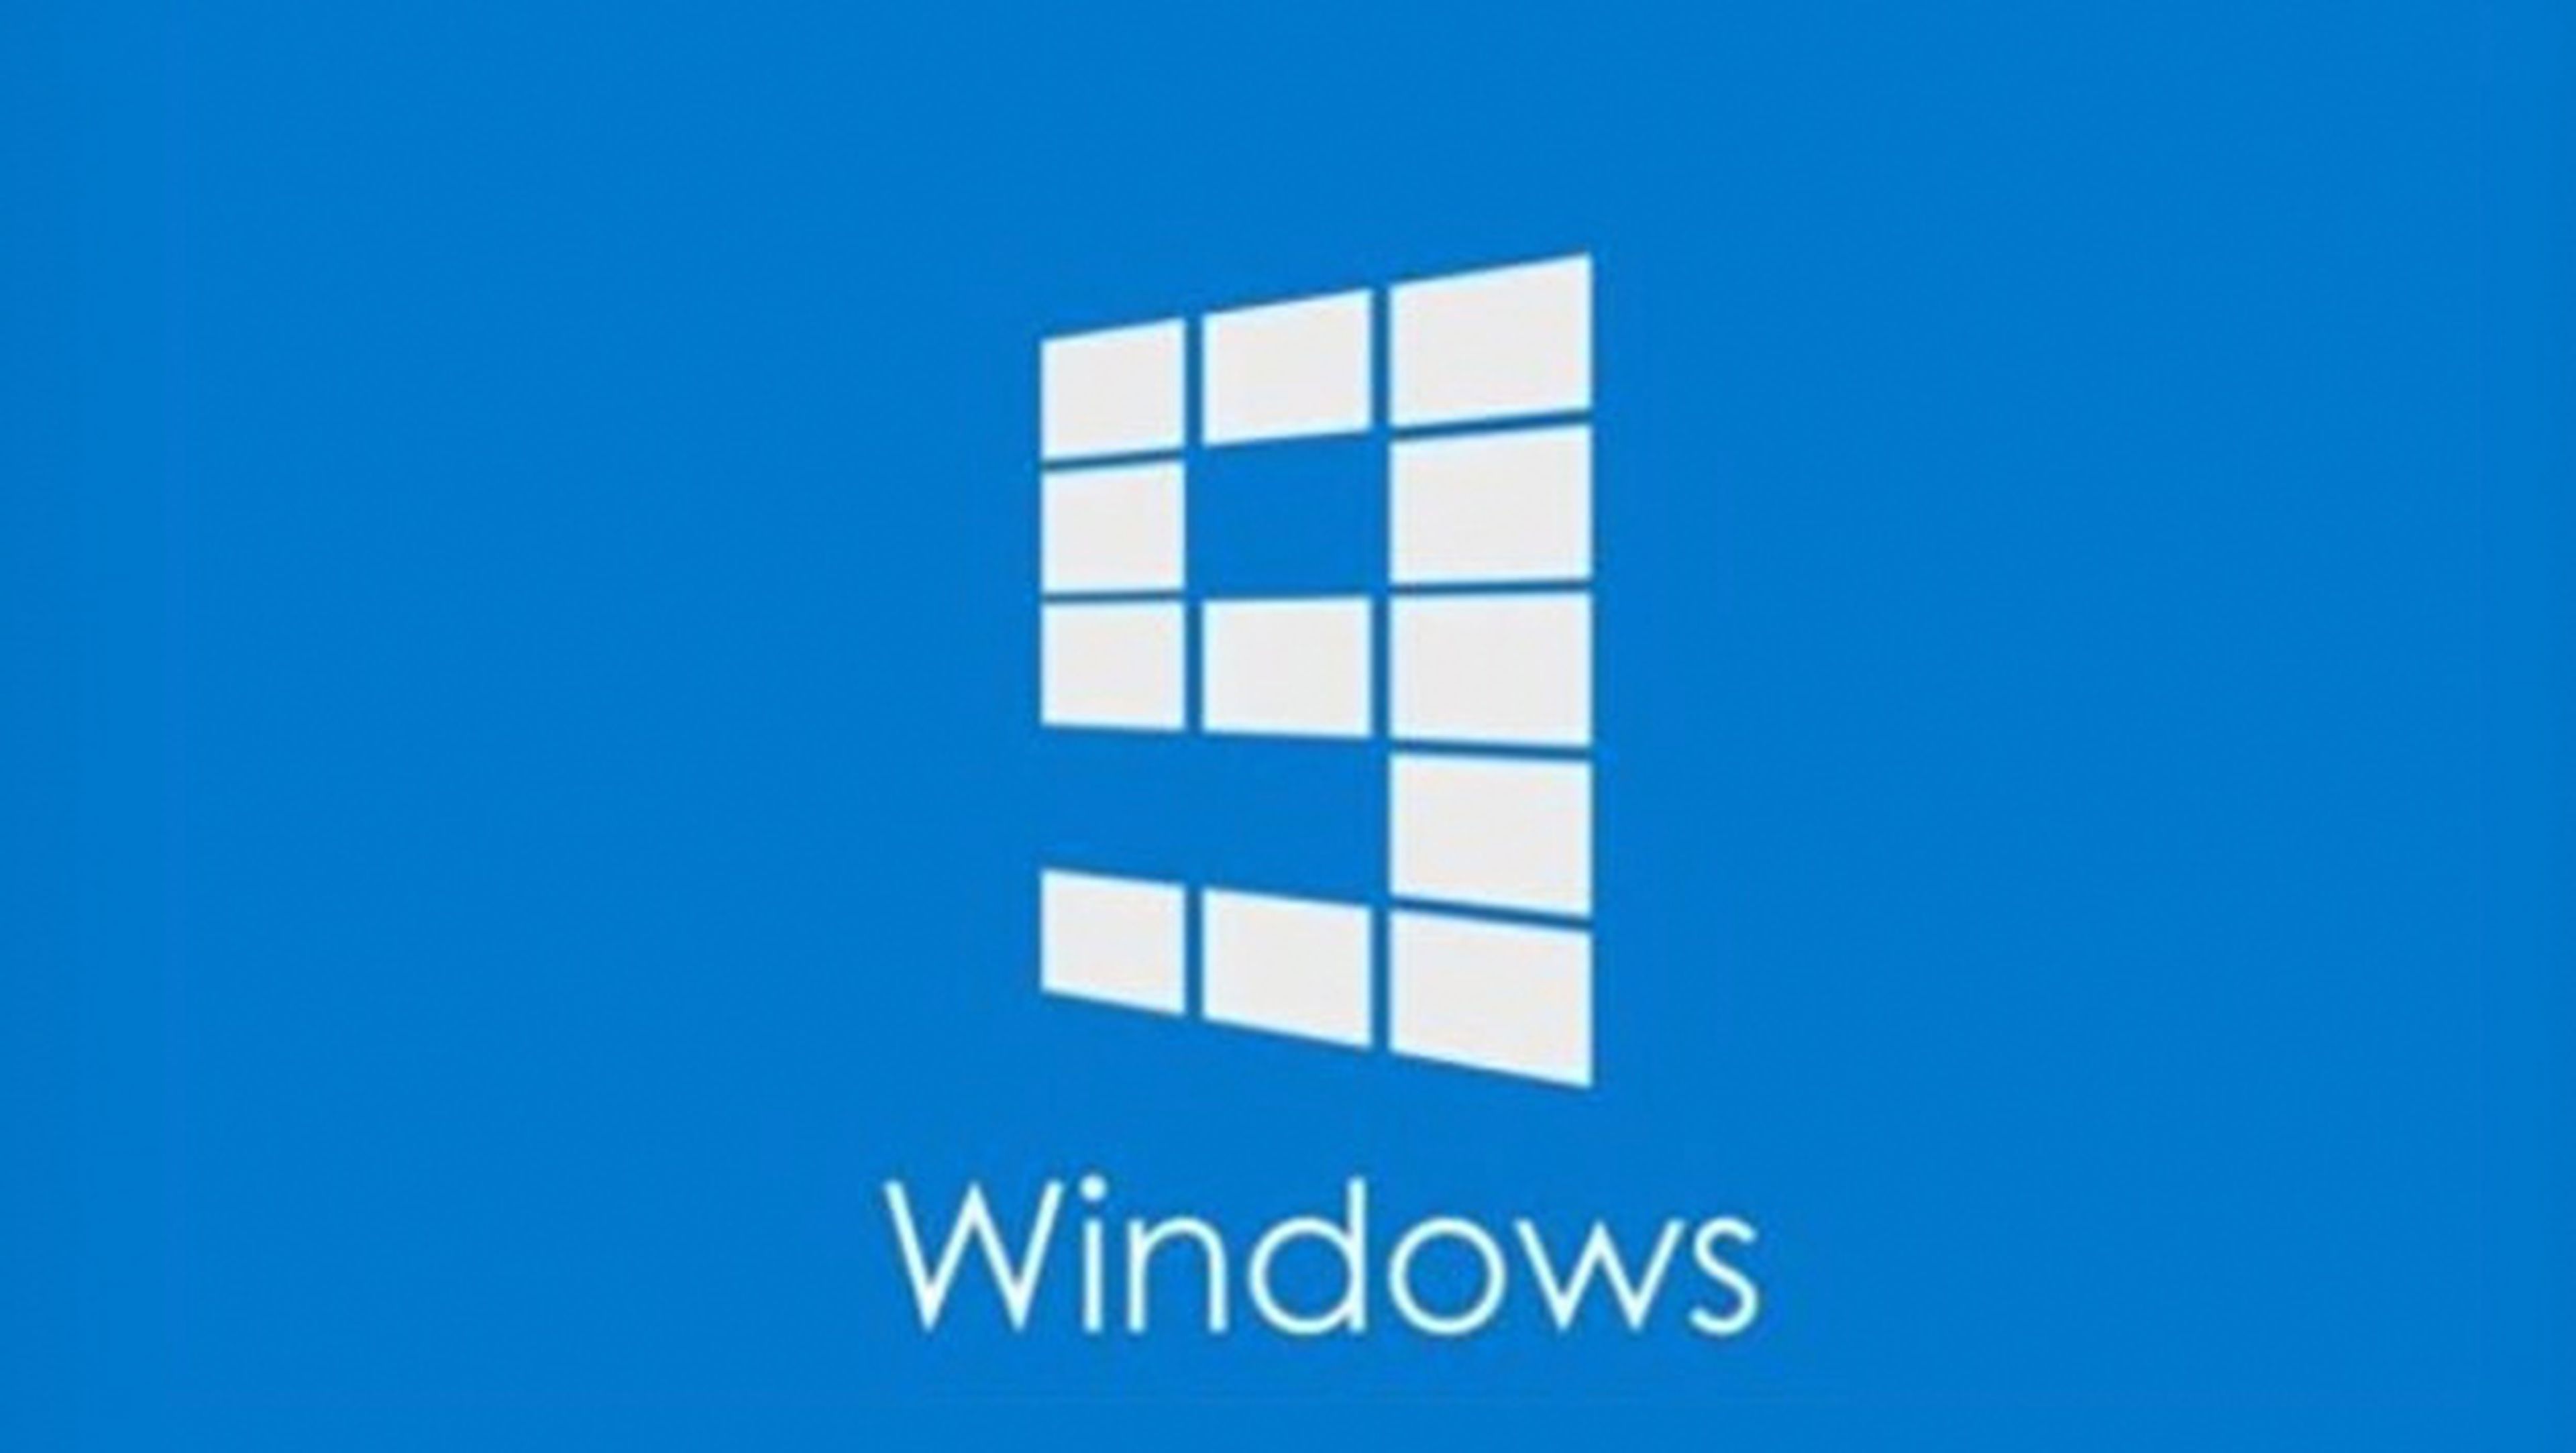 Microsoft enseña cómo será el logo de Windows 9 por error